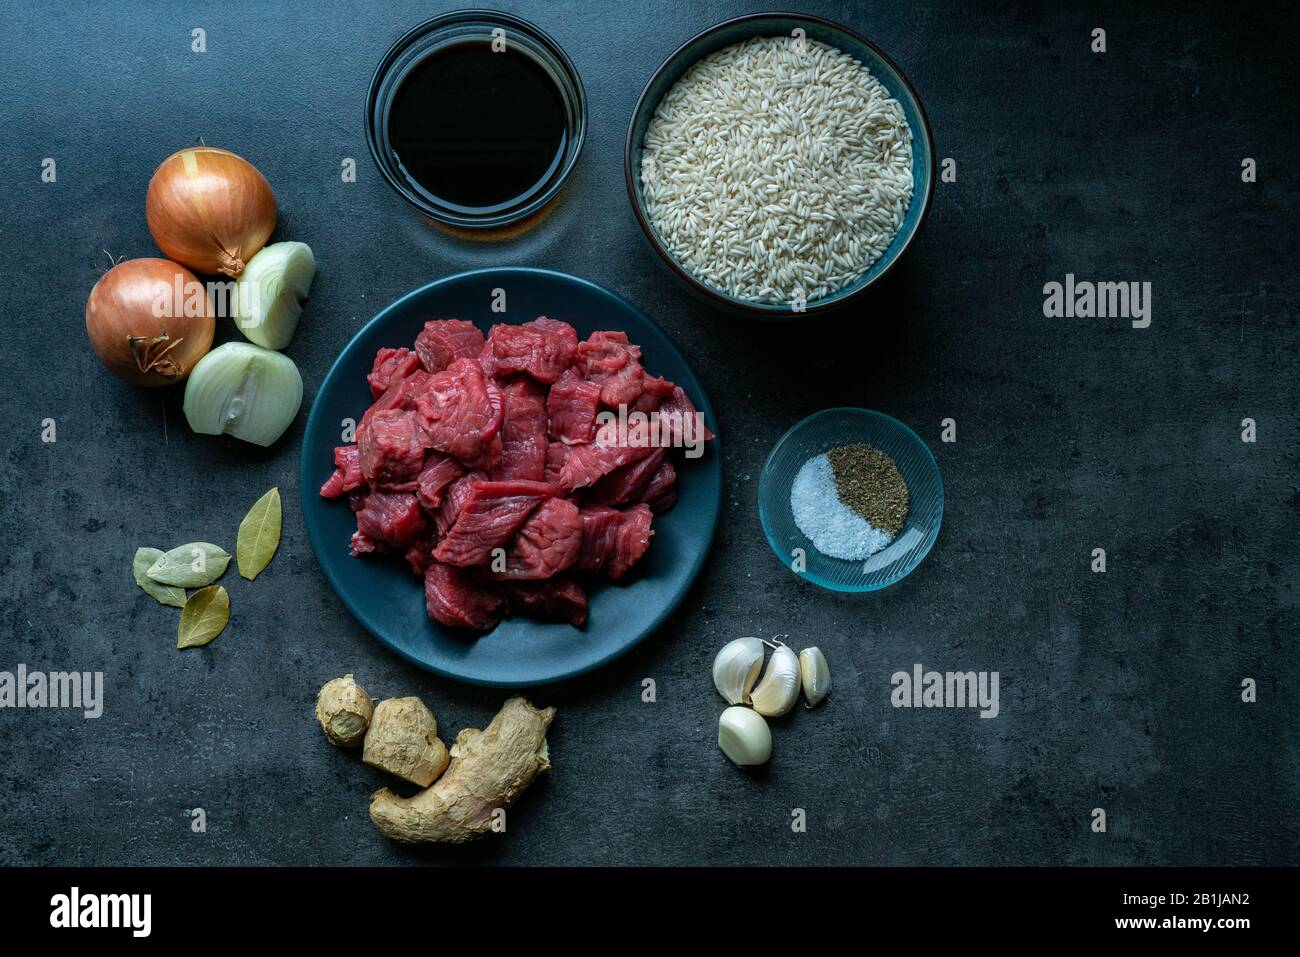 Vista dall'alto degli ingredienti alimentari, con carne, ingredienti e manzo al piano scuro, ingredienti indonesiani. Preparazione di cibo Foto Stock